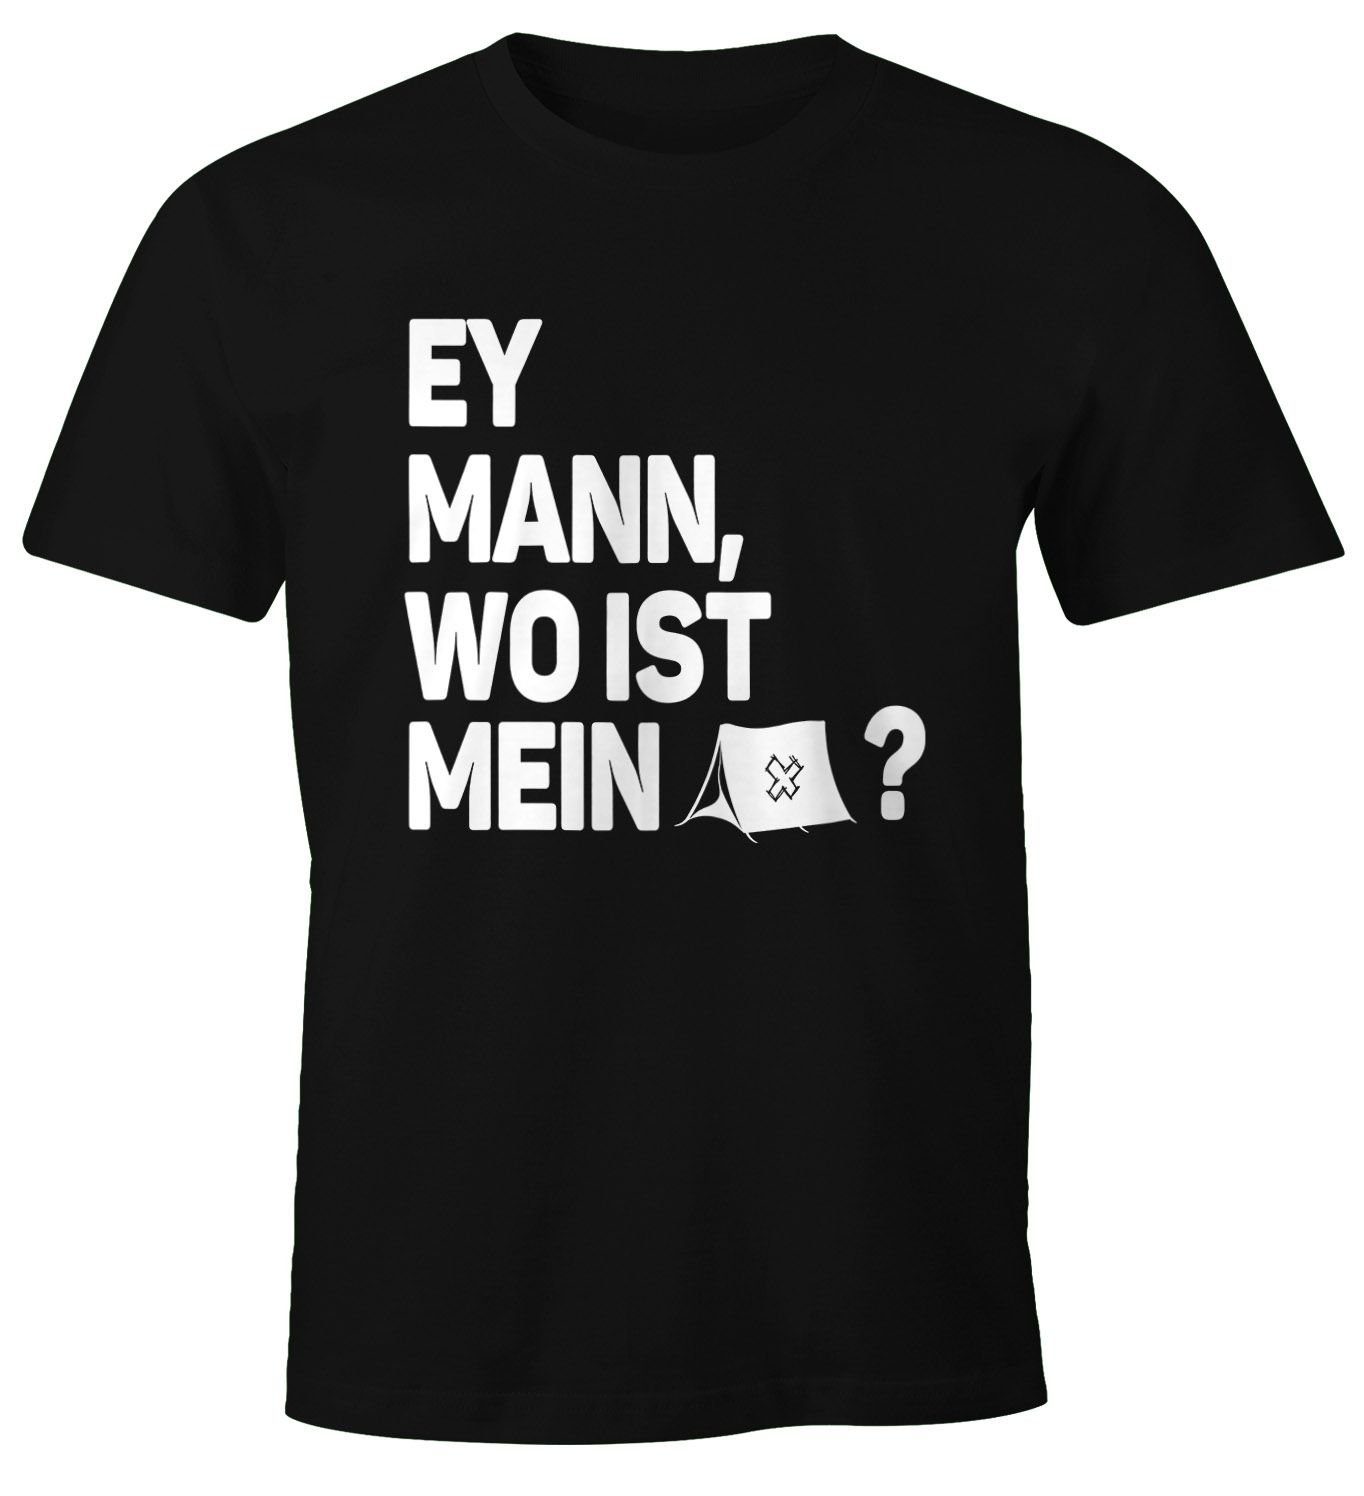 MoonWorks Print-Shirt Herren T-Shirt Spruch Ey Mann, wo ist mein Zelt? Fun-Shirt Party Festival Techno Rave Oberteil Moonworks® mit Print schwarz